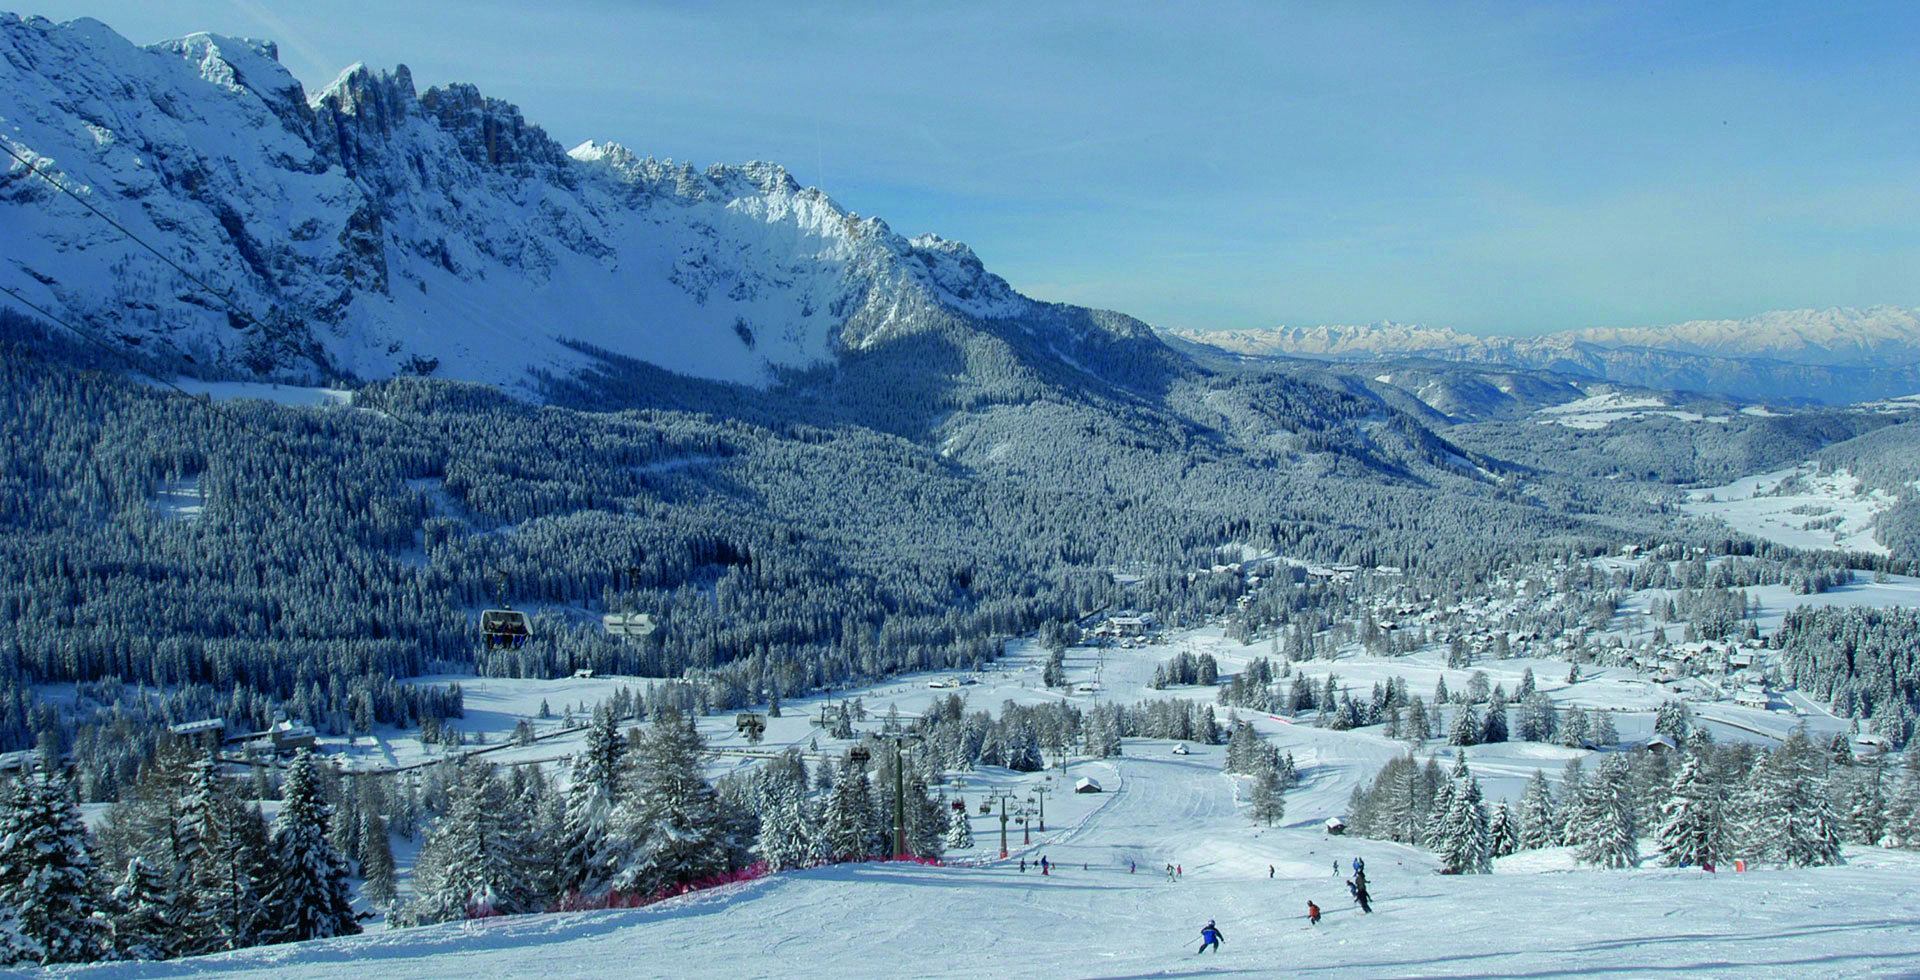 Ski resort Carezza